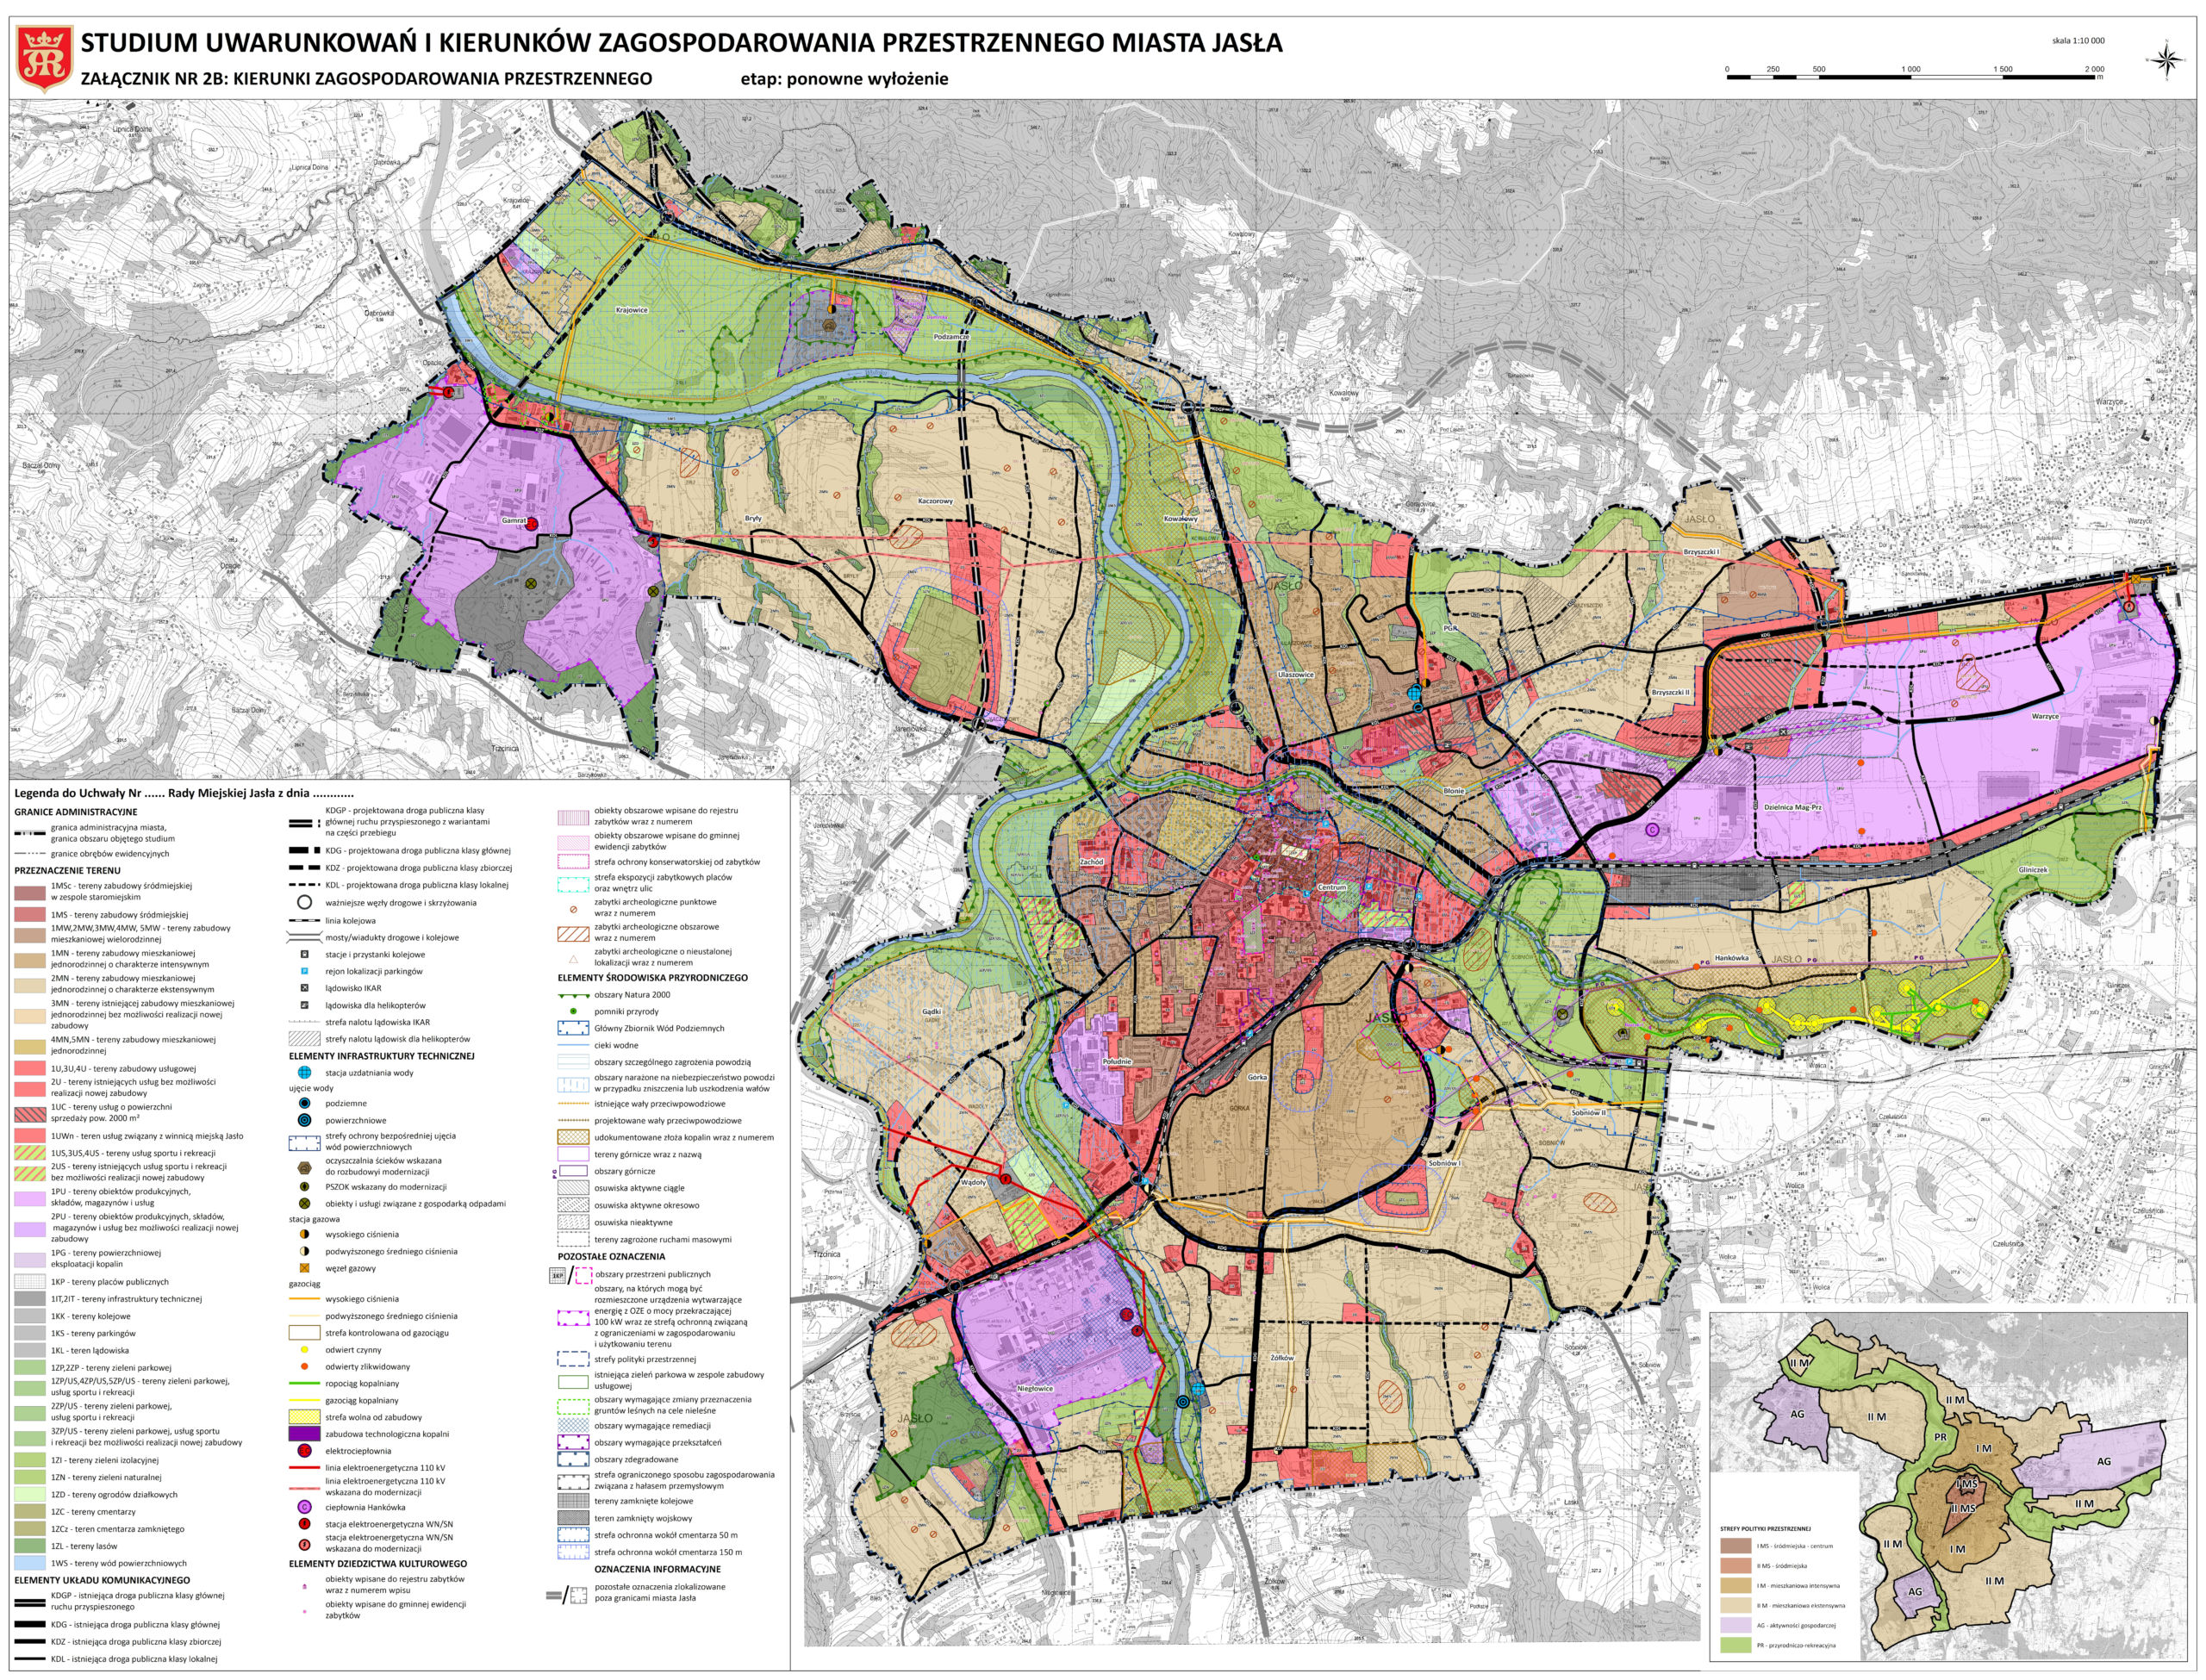 Studium uwarunkowań i kierunków zagospodarowania przestrzennego Miasta Jasła - kierunki zagospodarowania przestrzennego